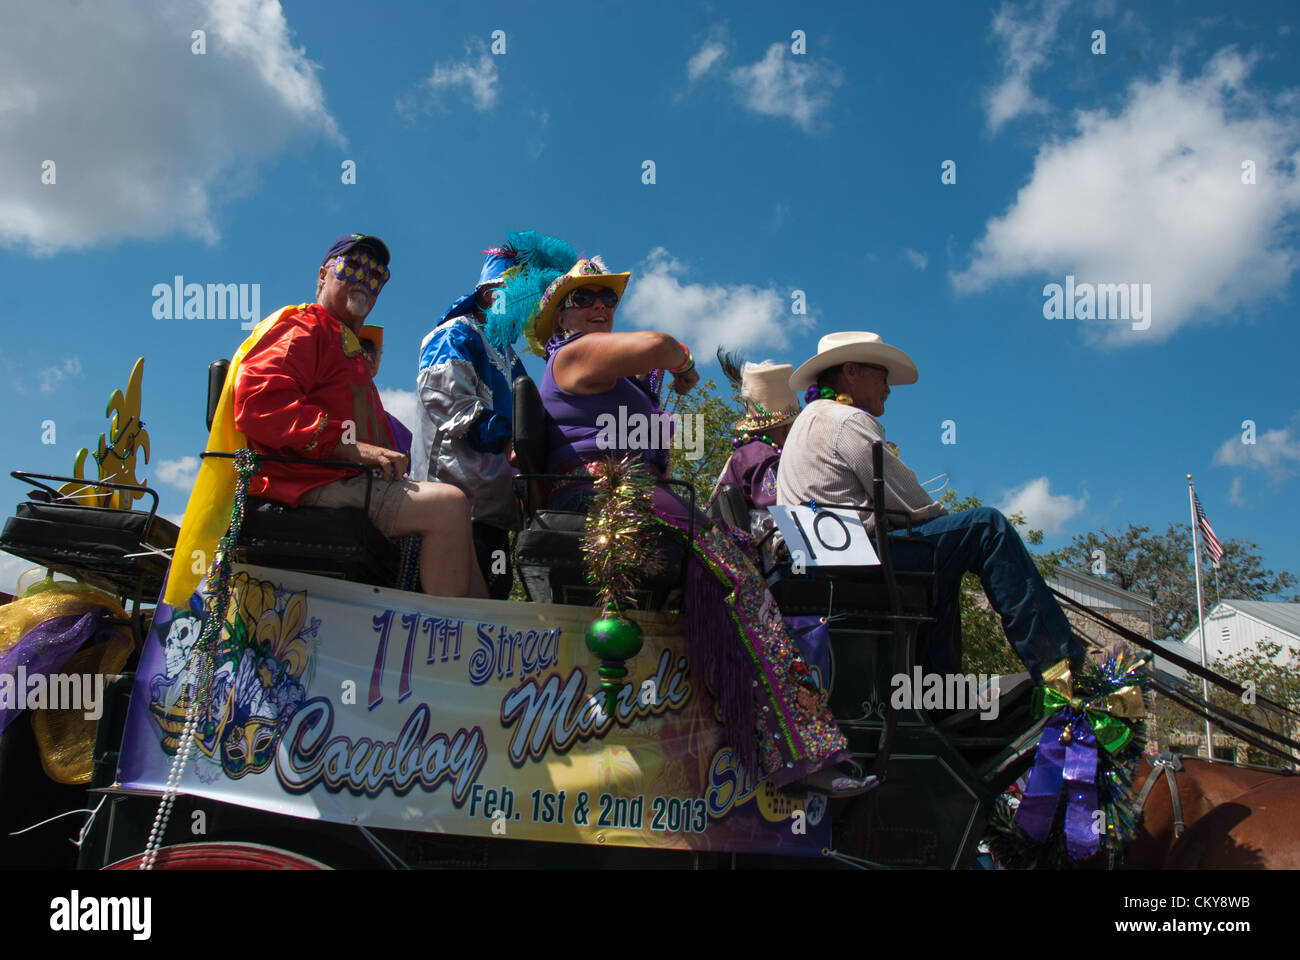 1 settembre 2012 Bandera, Texas, Stati Uniti d'America - Il Cowboy Mardis Gras stagecoach viaggia verso la strada principale durante il celebrare Bandera parade. Bandera è conosciuta come la capitale del Cowboy del mondo. Foto Stock